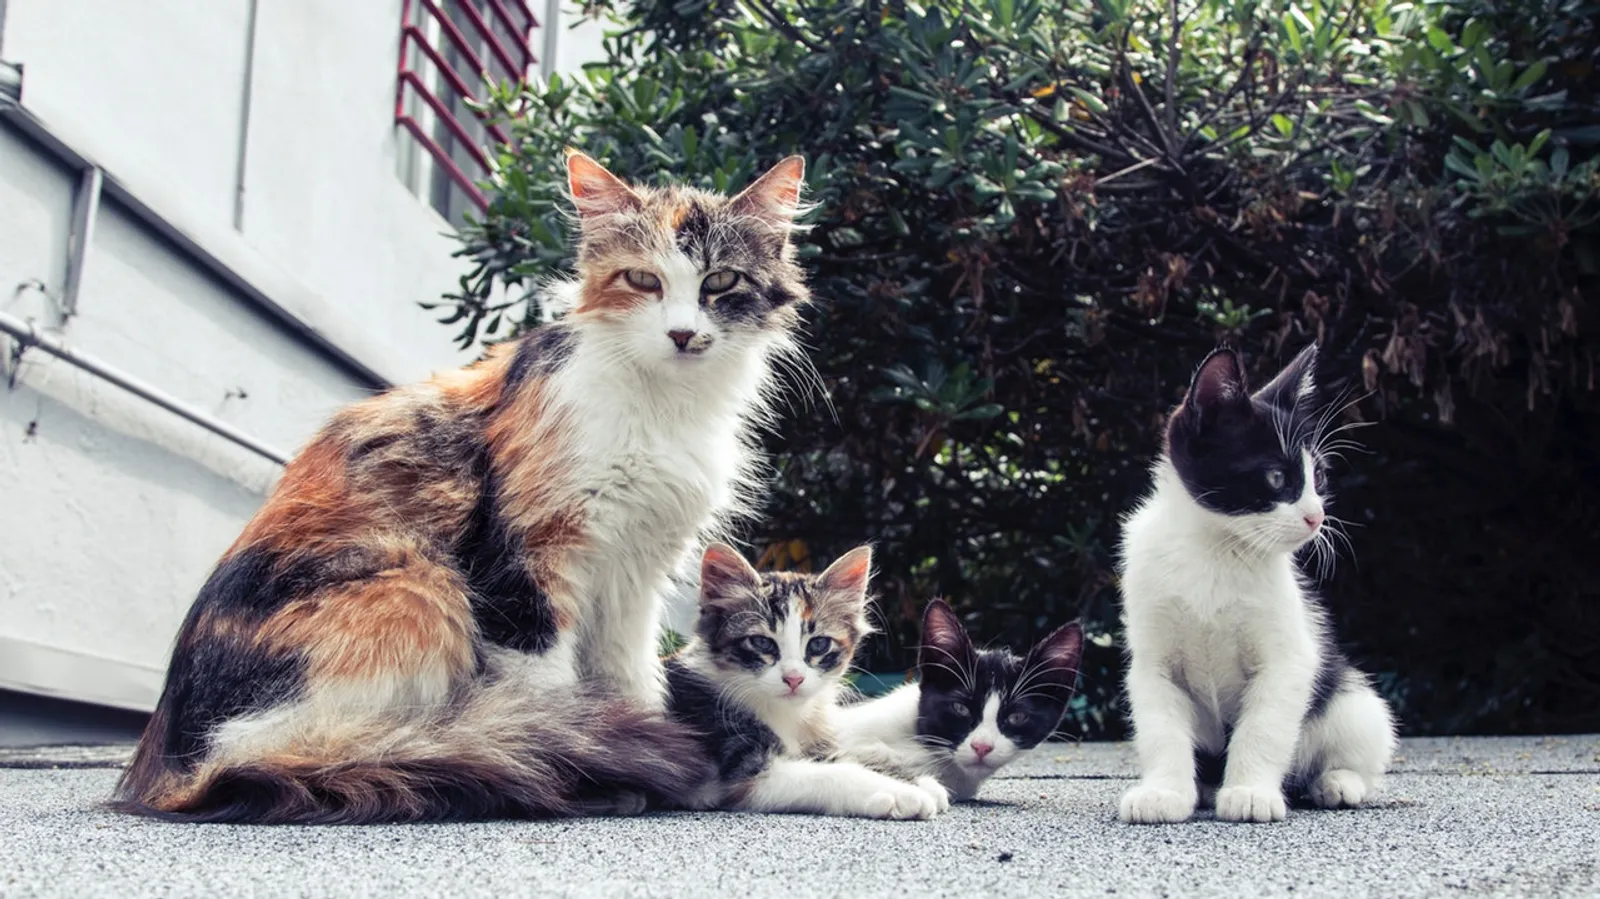 1 Rumah Punya 15, di Kota Ini Lebih Banyak Kucing Dibanding Manusianya